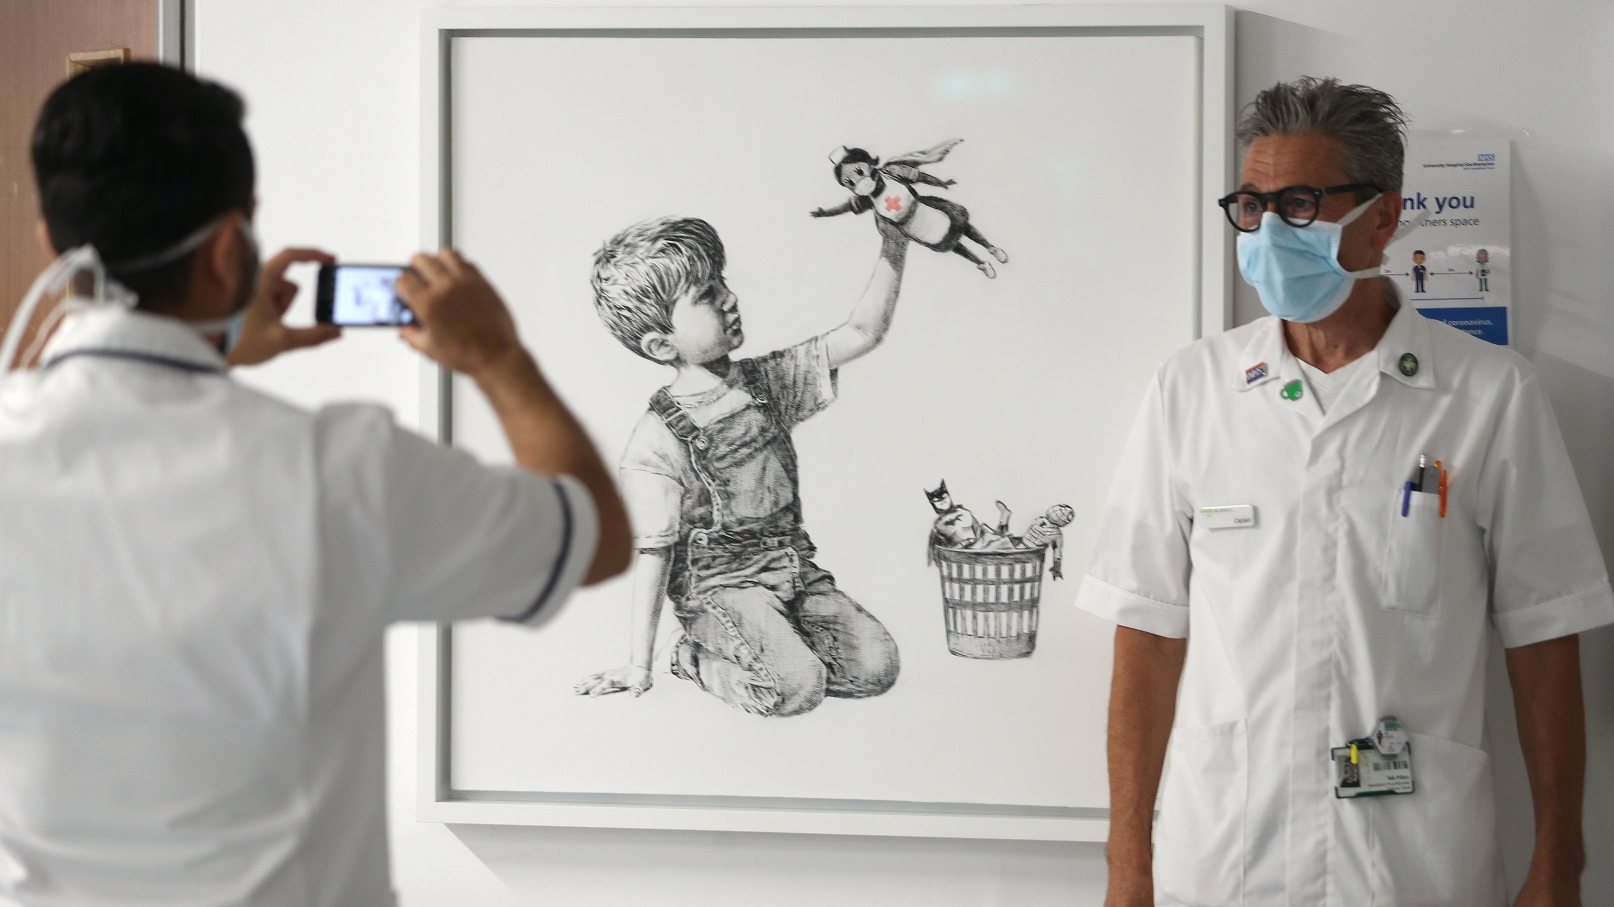 Banksy doou a peça de arte ao hospital de Southampton em maio de 2020.